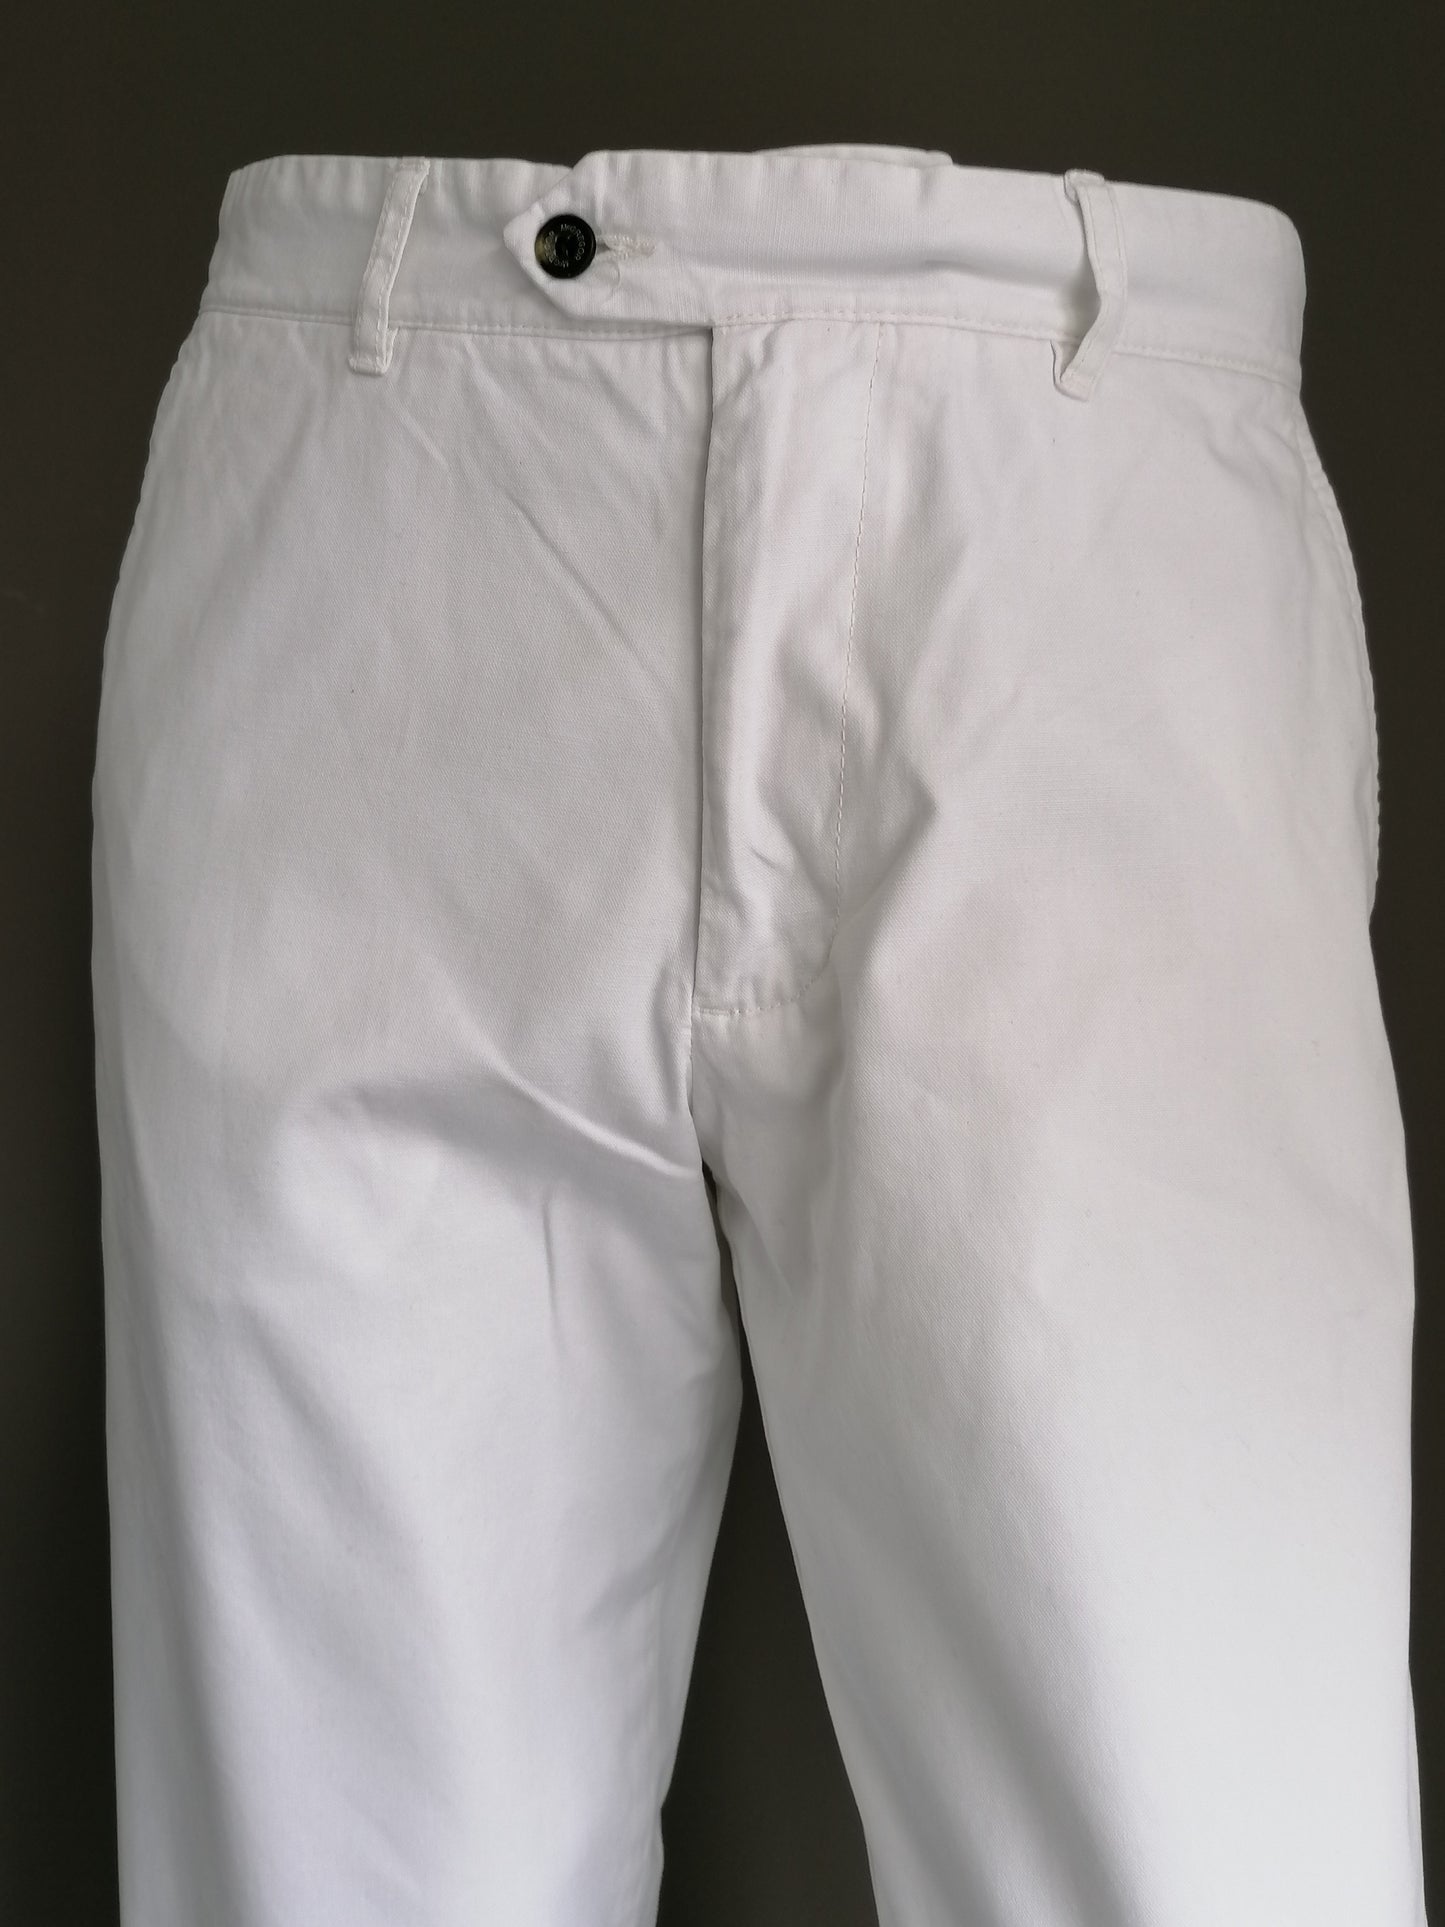 Pantaloni McGregor. Bianco colorato. La taglia F98 è vista come le dimensioni uguali a una dimensione W31- l32.